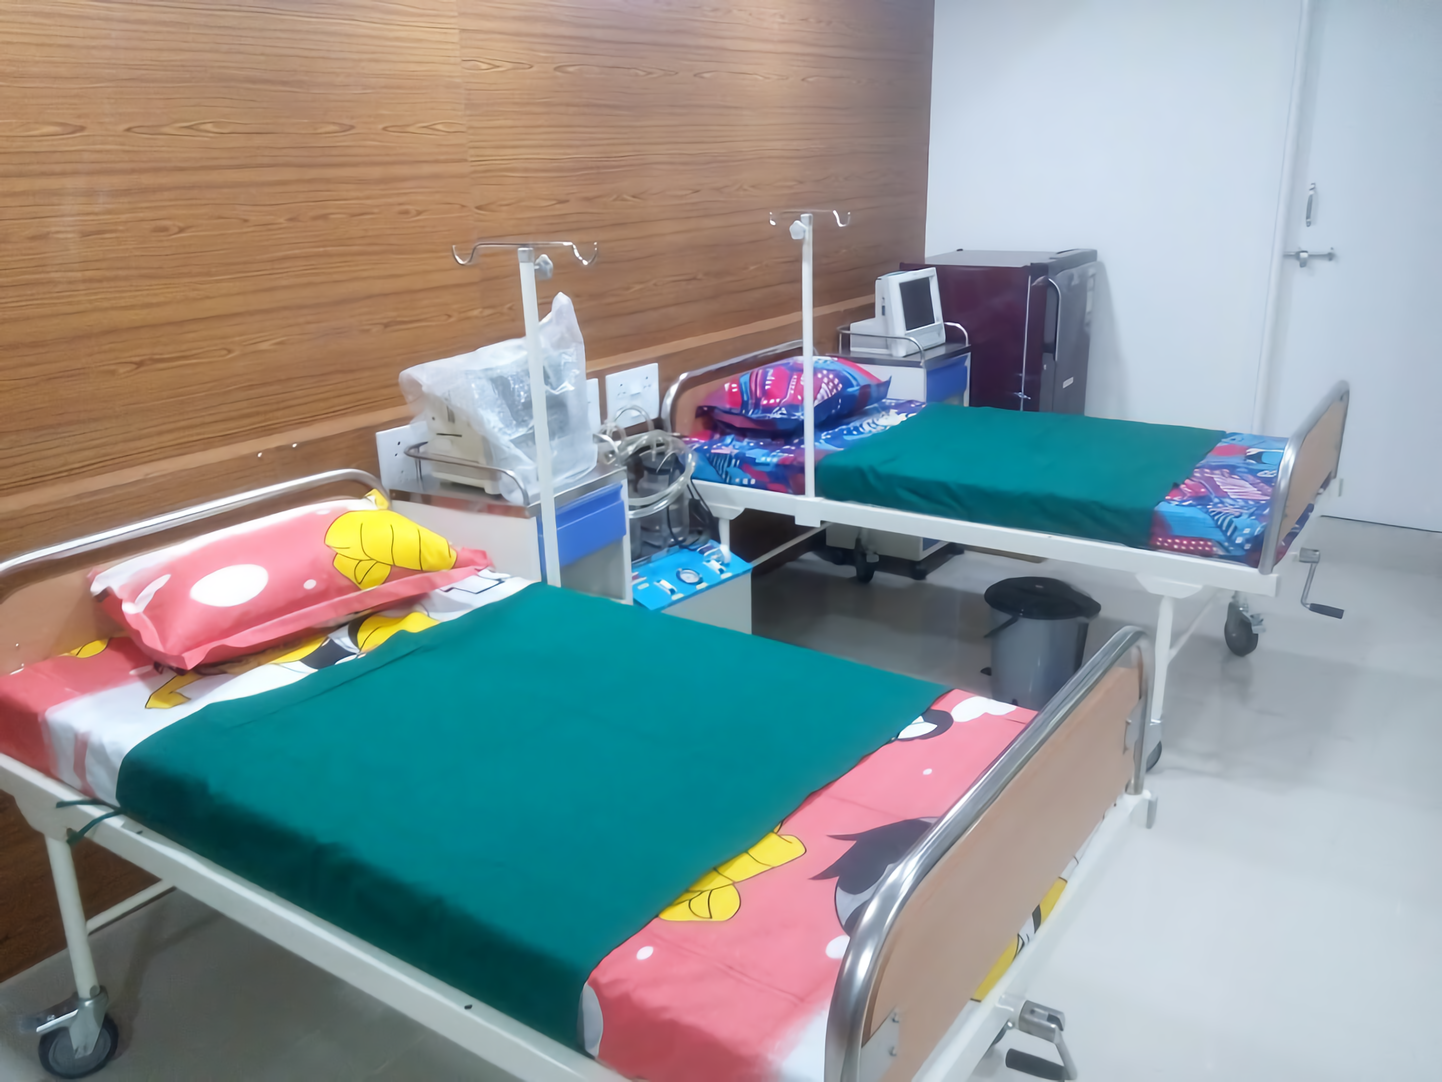 Orange Neonatal And Pediatric Intensive Care Unit-photo